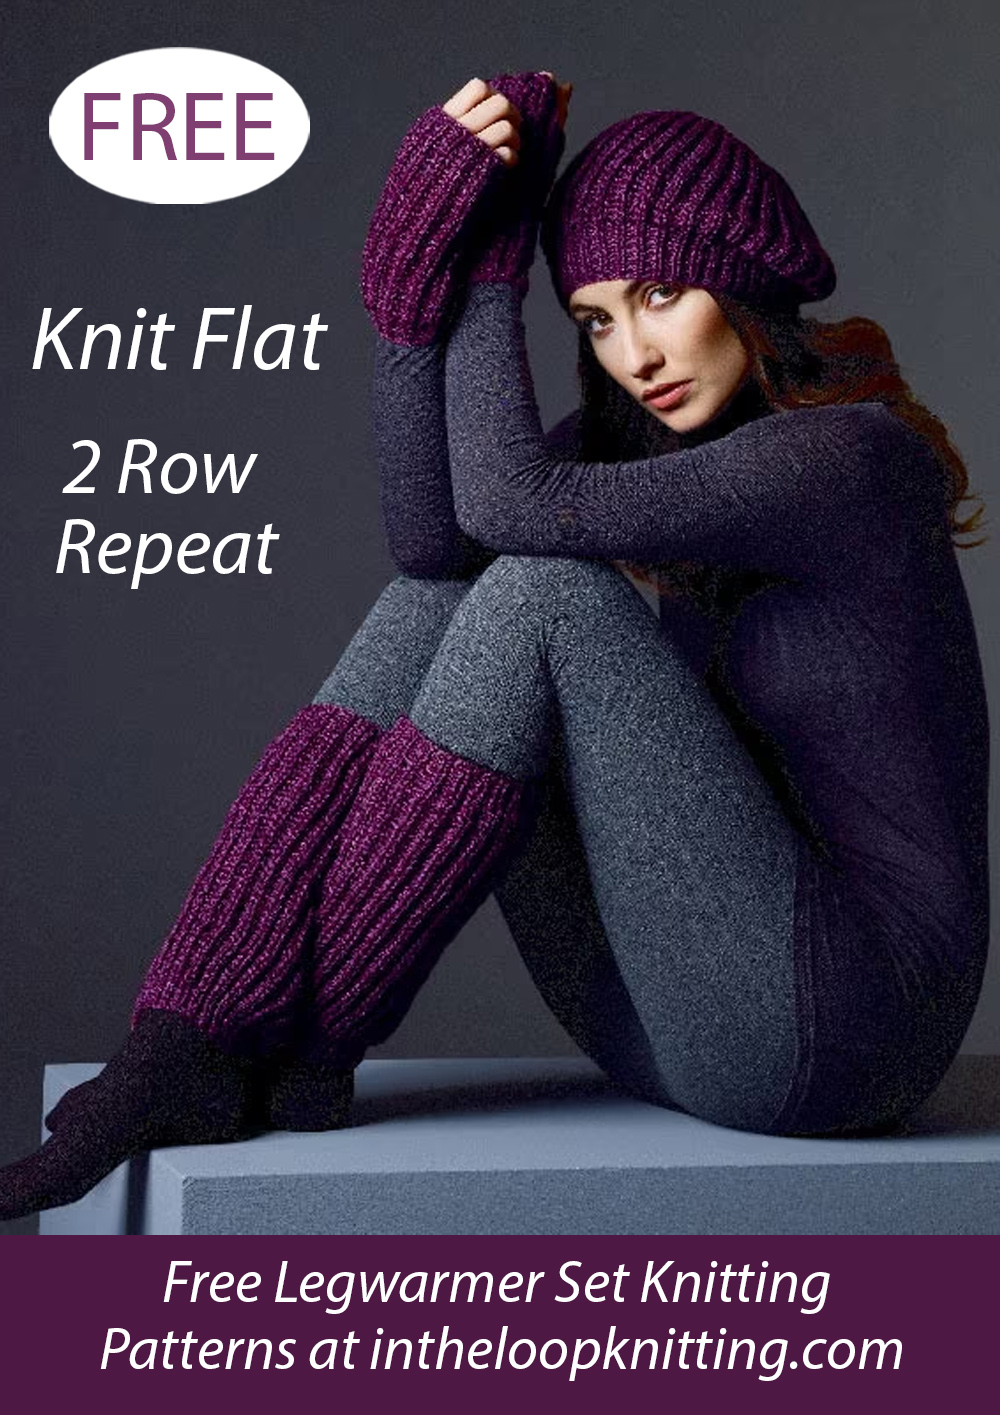 Free Hat, Wrist and Leg Warmers Knitting Pattern Set